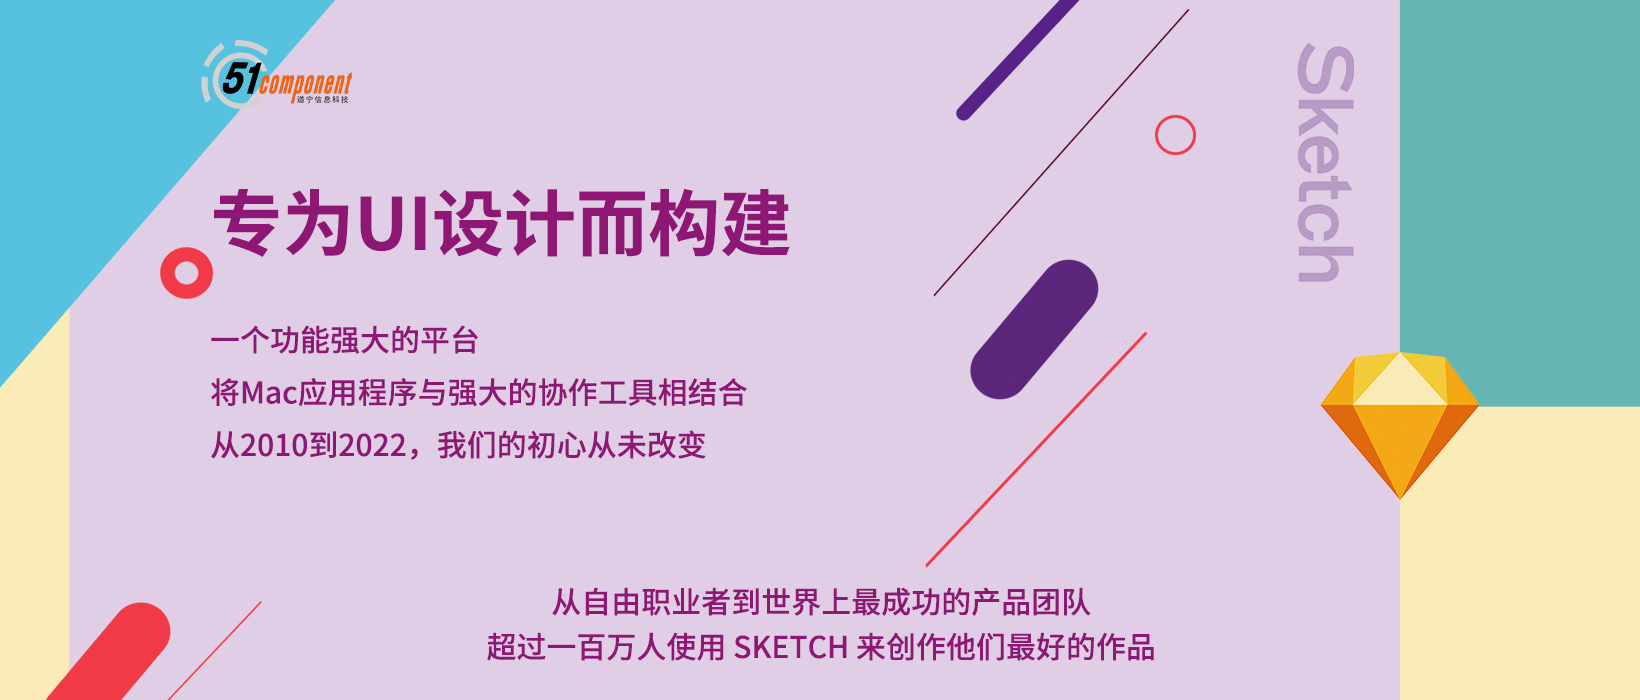 专为UI设计而生，上海道宁与Sketch为广大UI设计师带来更好的设计工具